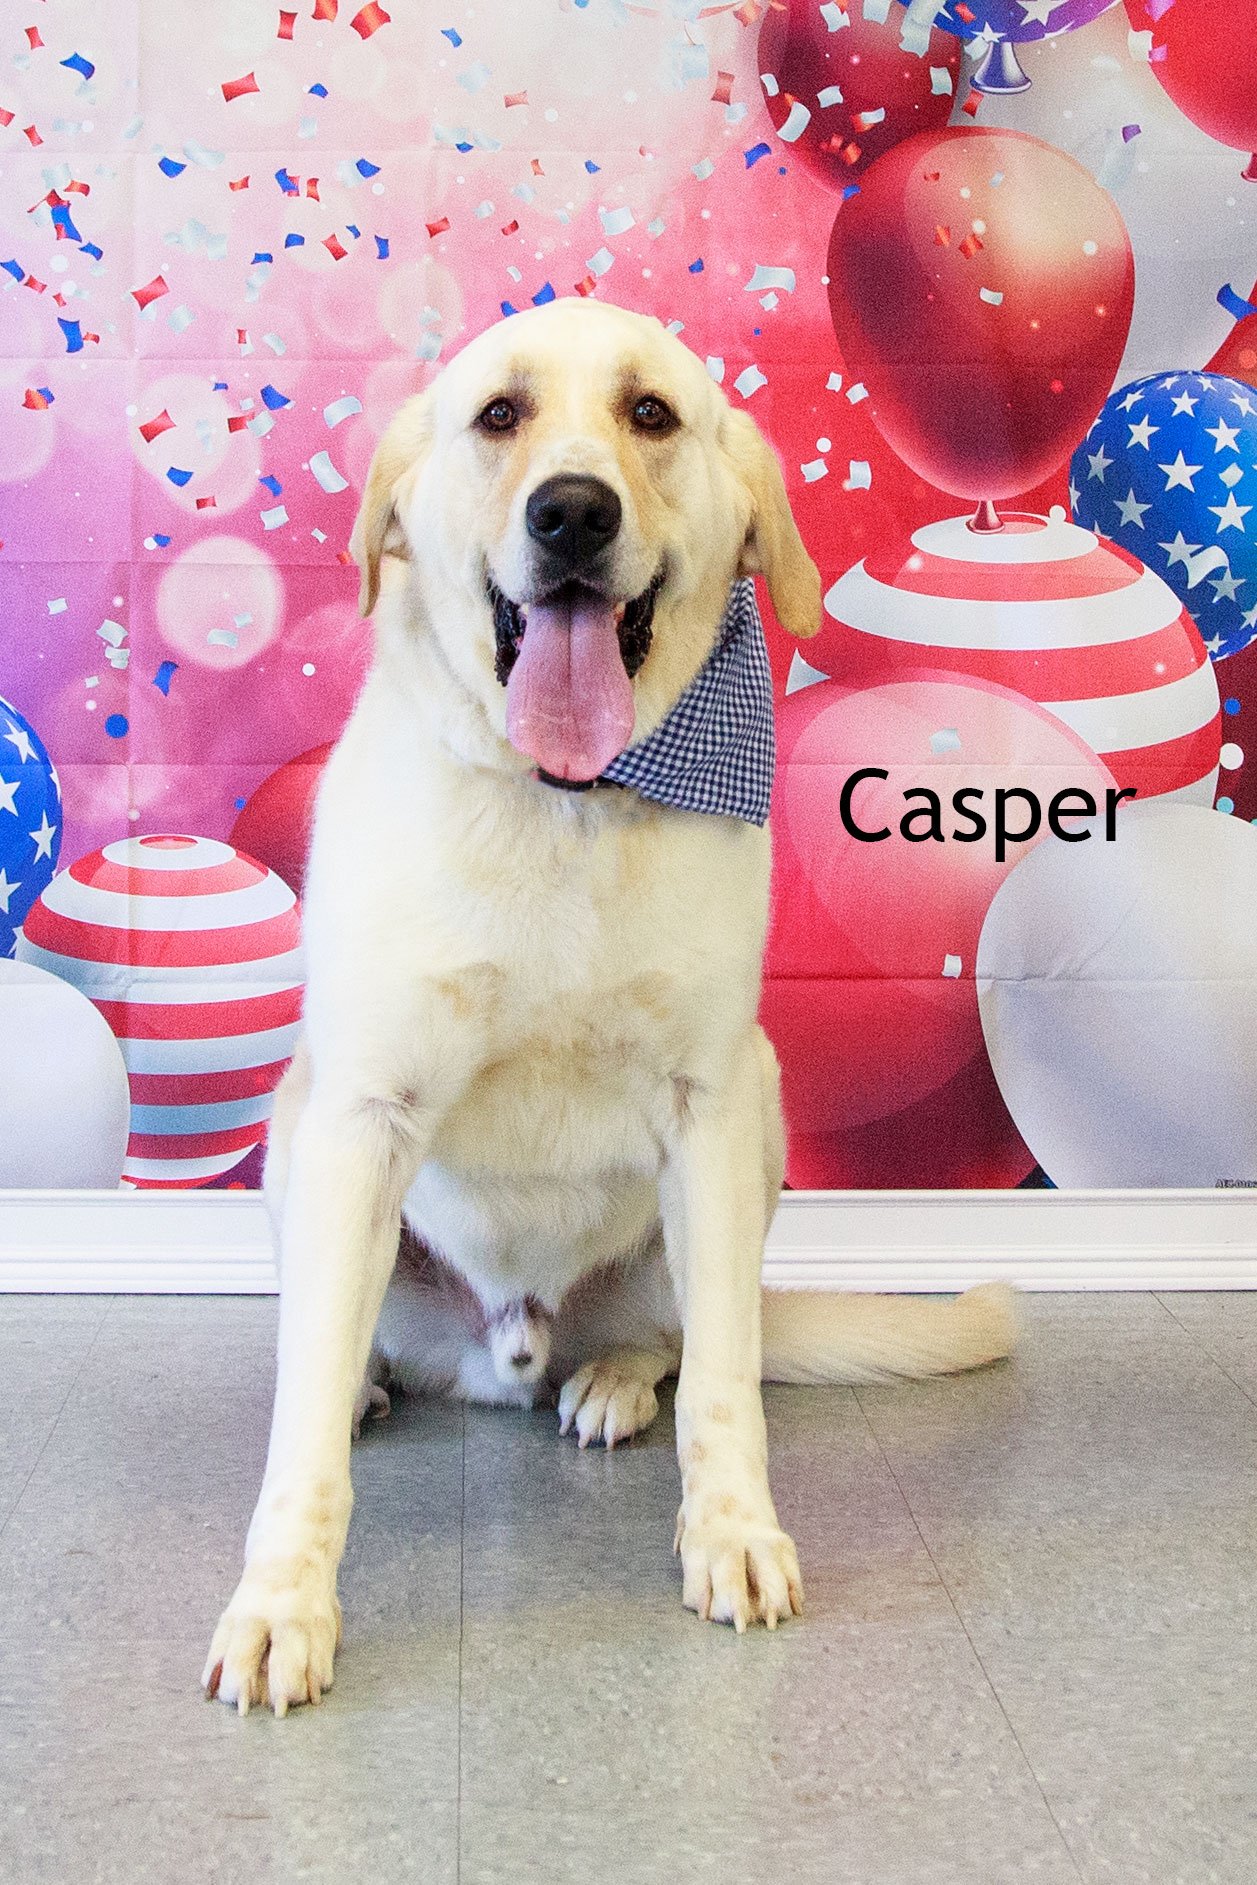 adoptable Dog in Cottageville, WV named Casper